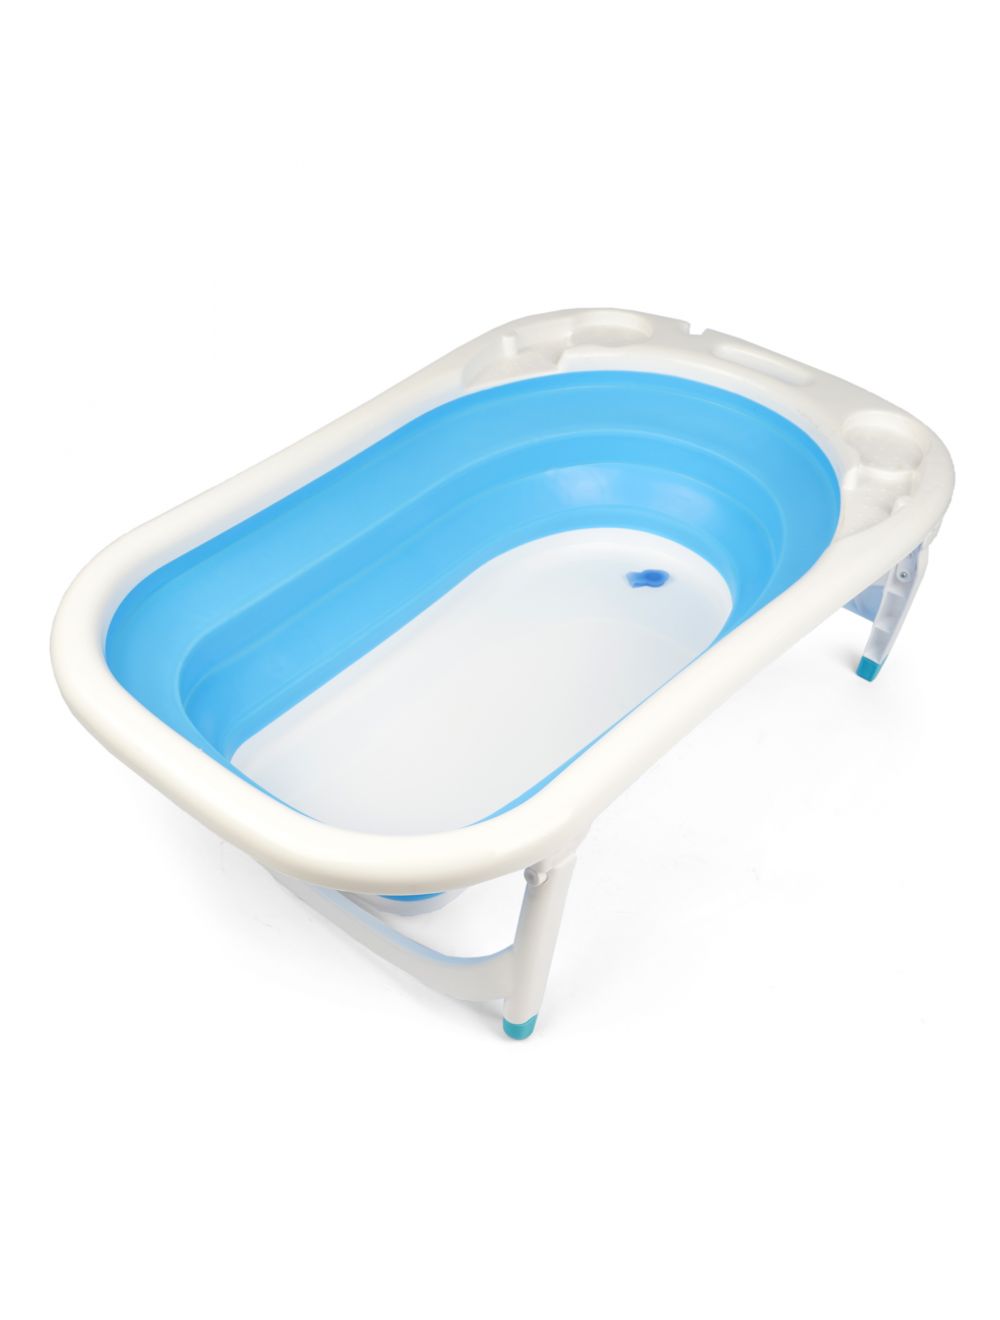 Joymaker Baby Bathtub Blue & White